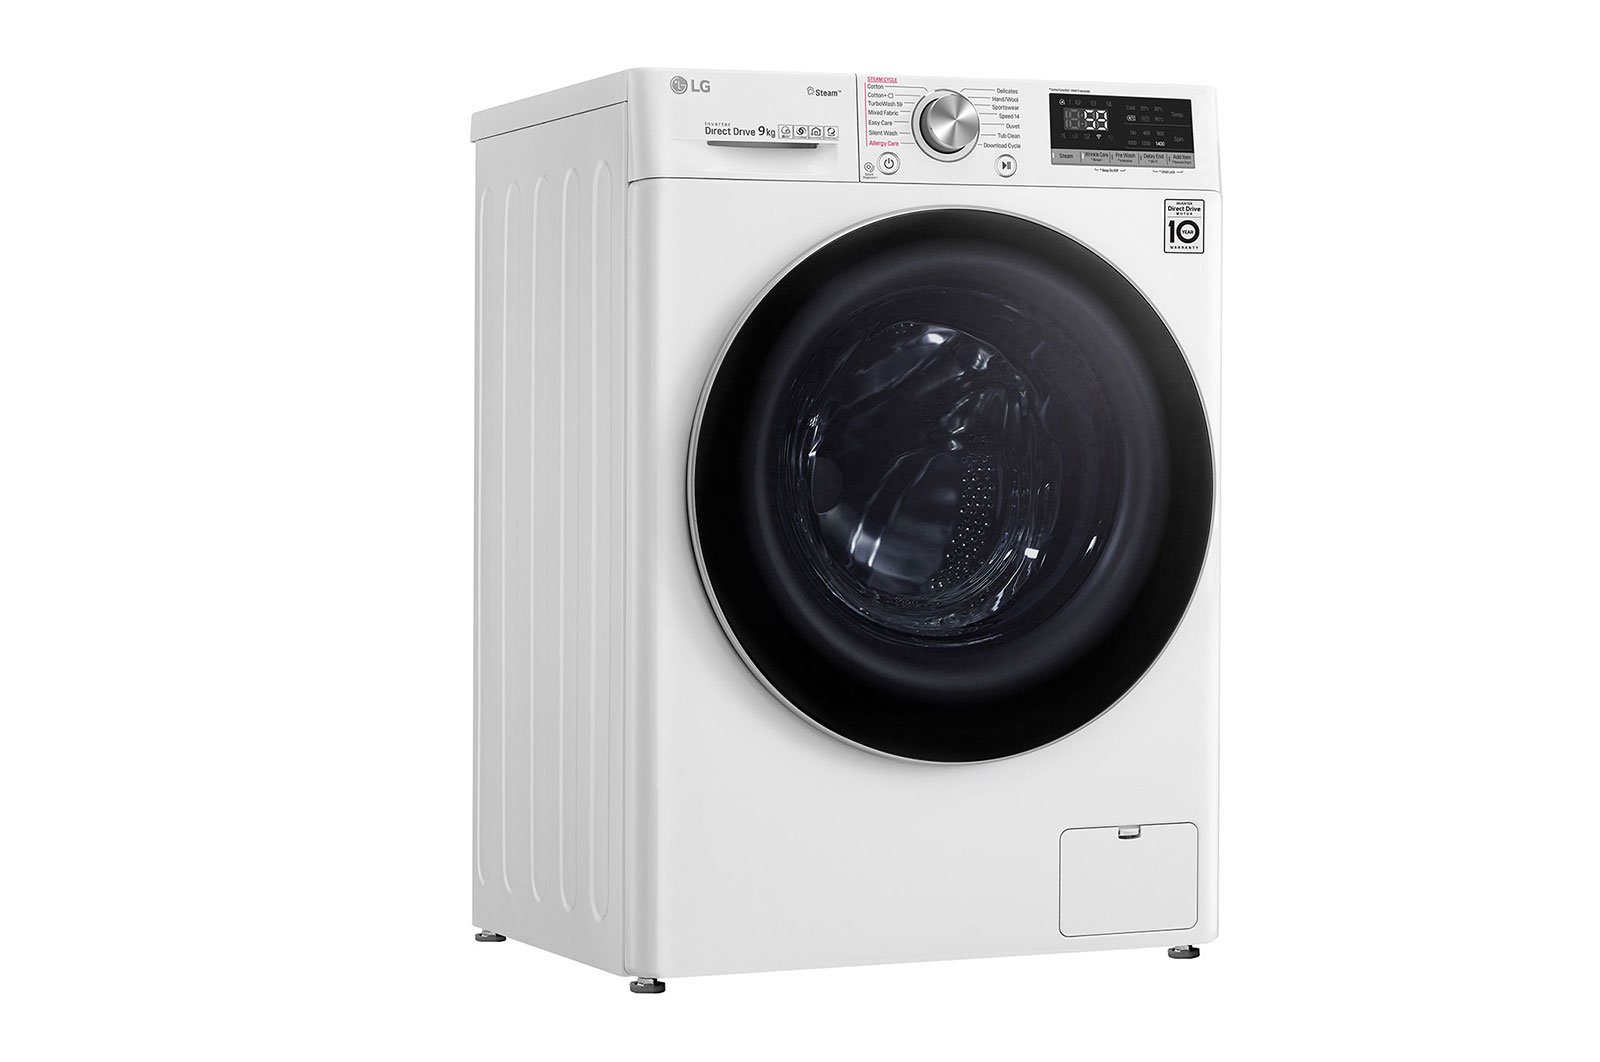 Máy giặt lồng ngang thông minh LG AI DD 9kg FV1409S3W